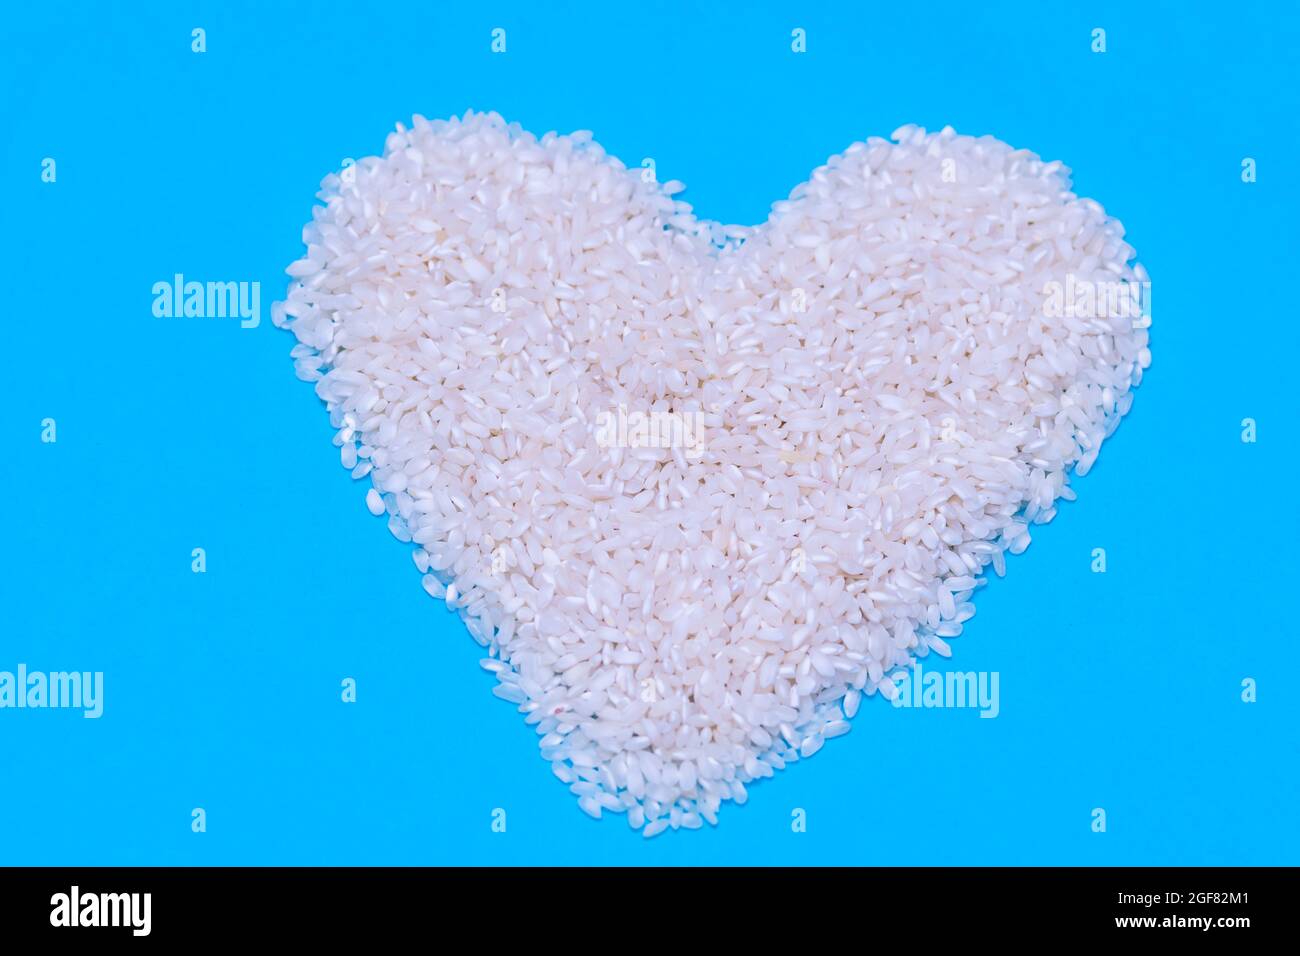 un puñado de arroz blanco crudo en forma de corazón sobre fondo azul. concepto de comida, cocina y vida saludable Foto de stock